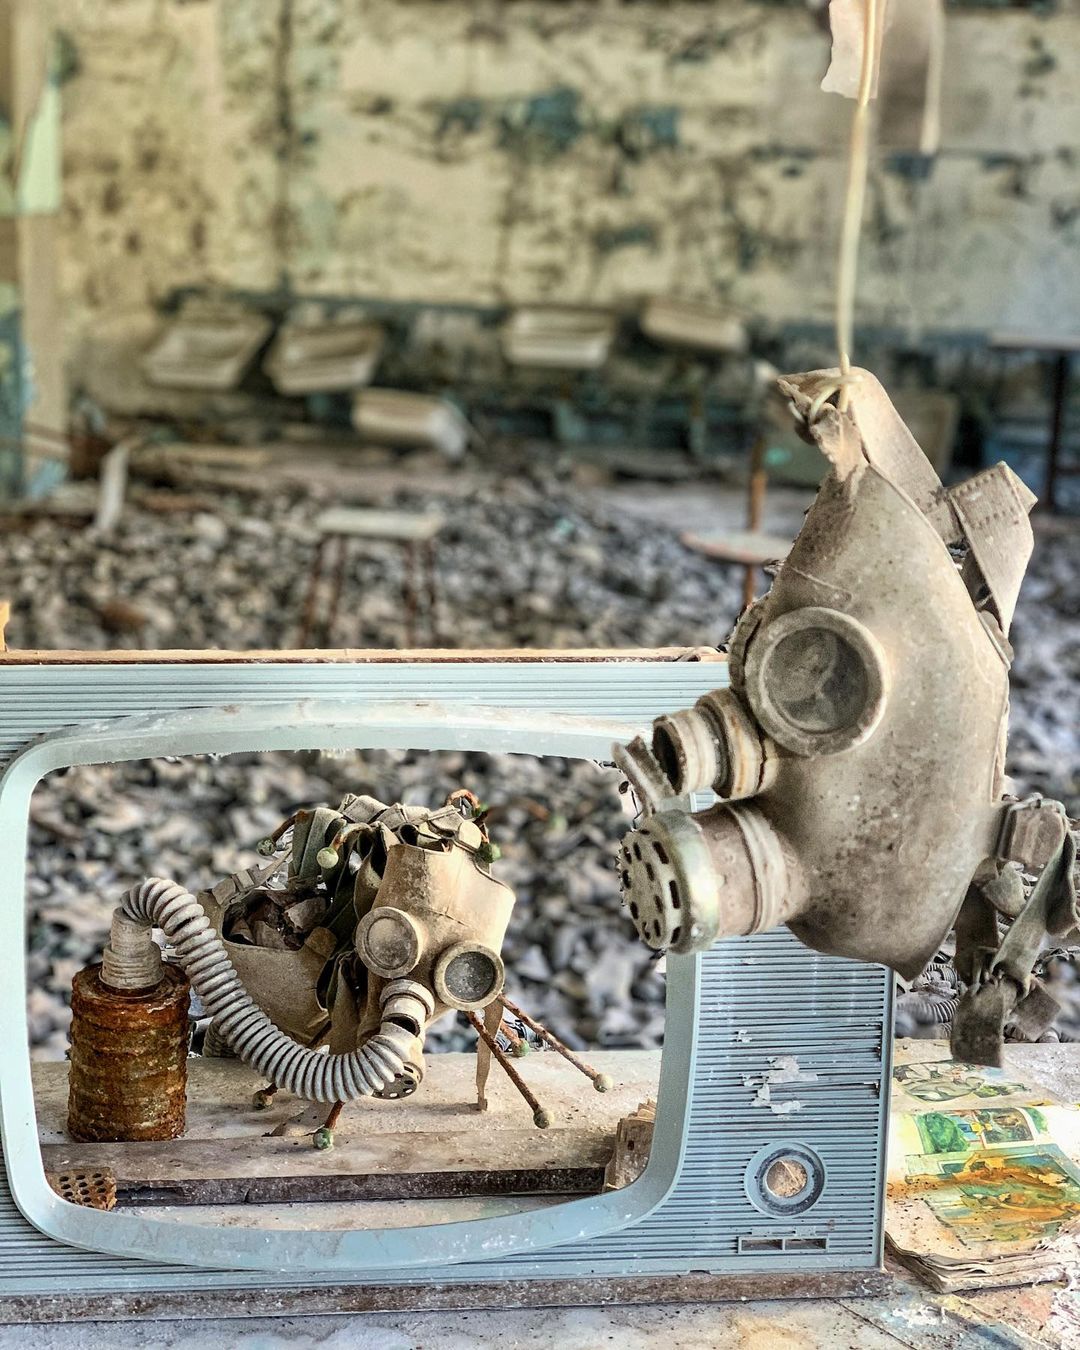 35 лет спустя: как выглядит Чернобыль сегодня